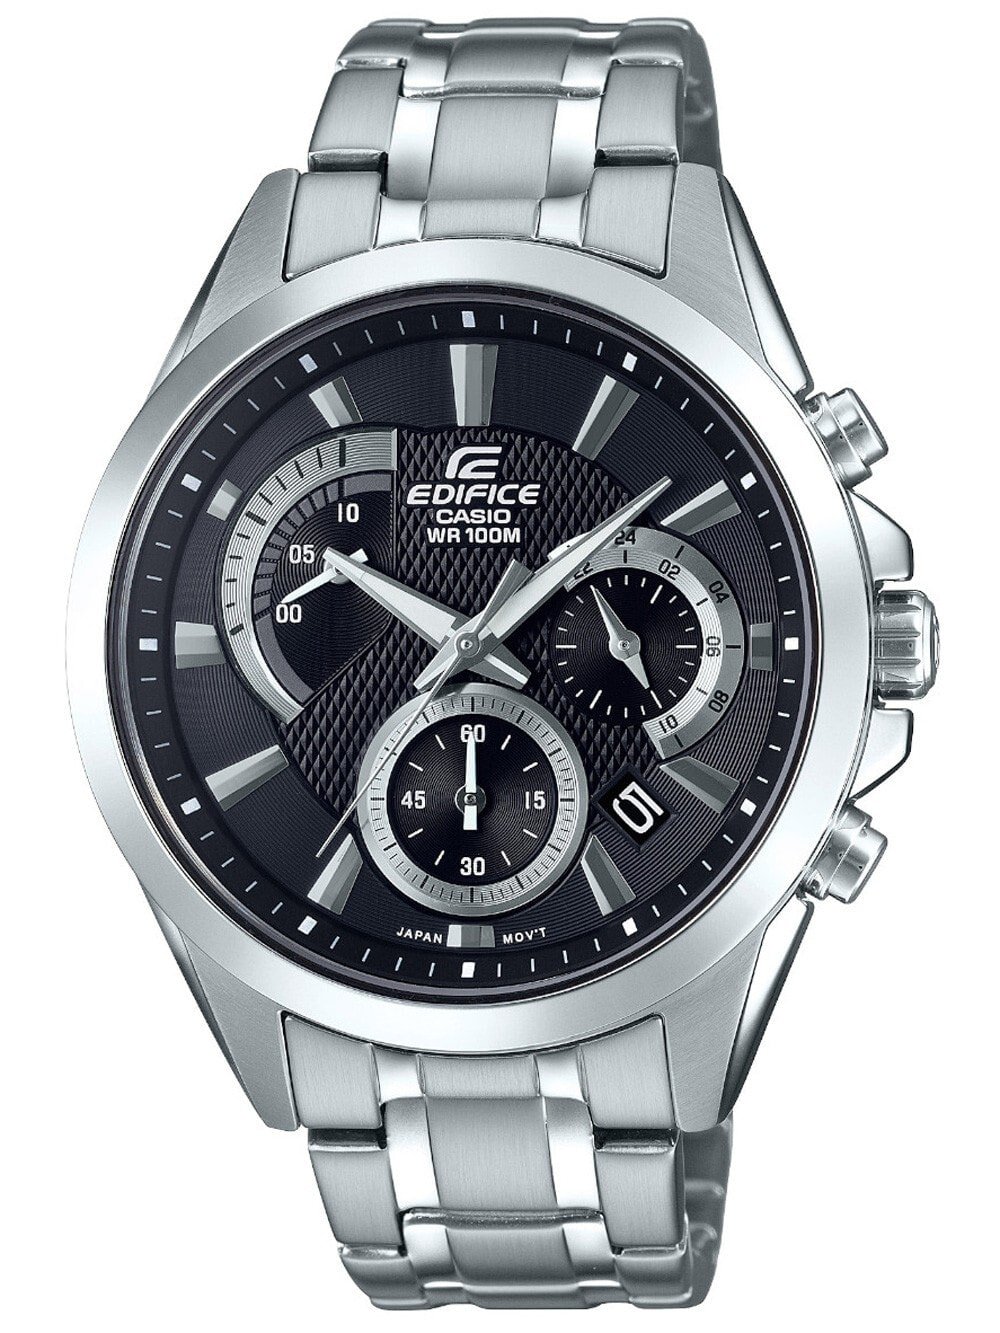 Мужские наручные часы с серебряным браслетом Casio EFV-580D-1AVUEF Edifice Chronograph 42mm 10ATM